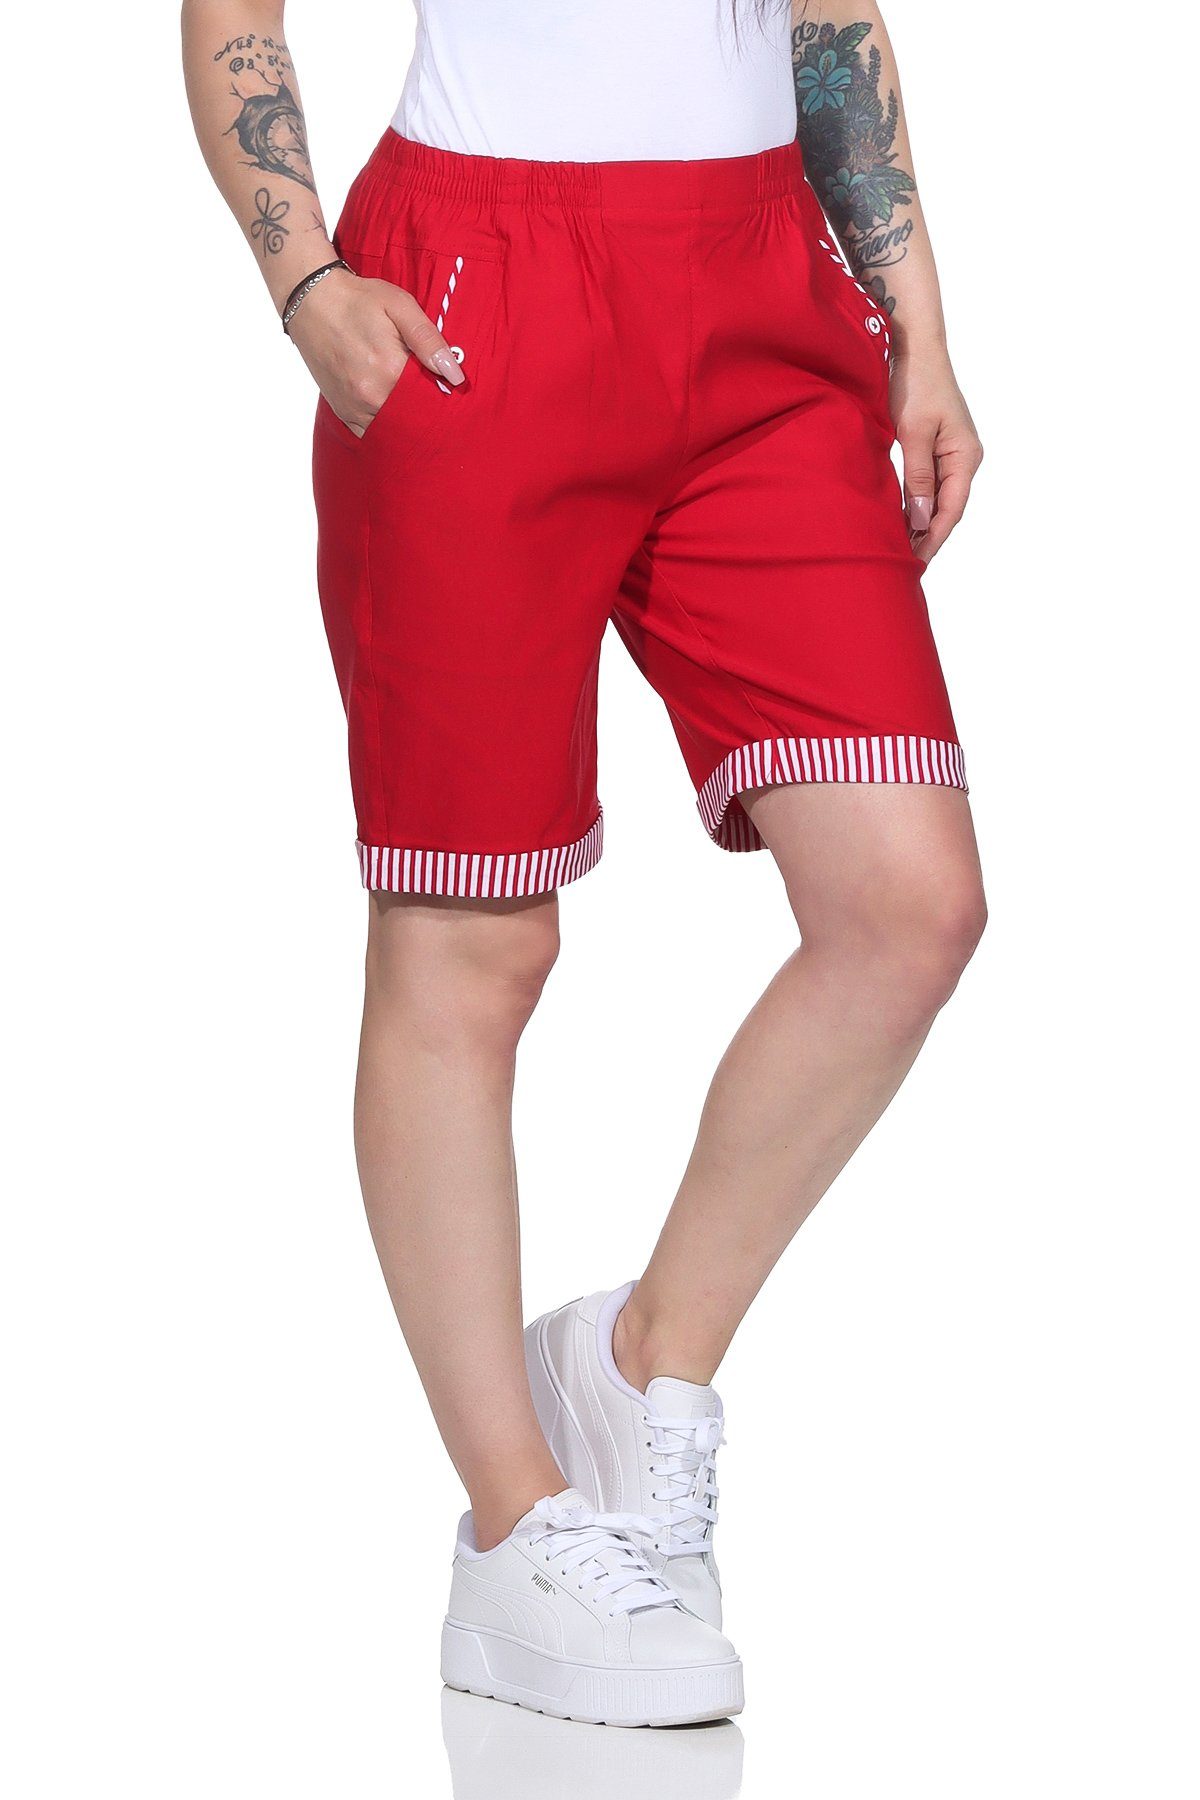 Aurela Damenmode Shorts Bermuda Maritime Damen Sommer Shorts Strandbermuda auch in großen Größen erhältlich, mit elastischem Bund, mit maritimen Details Rot